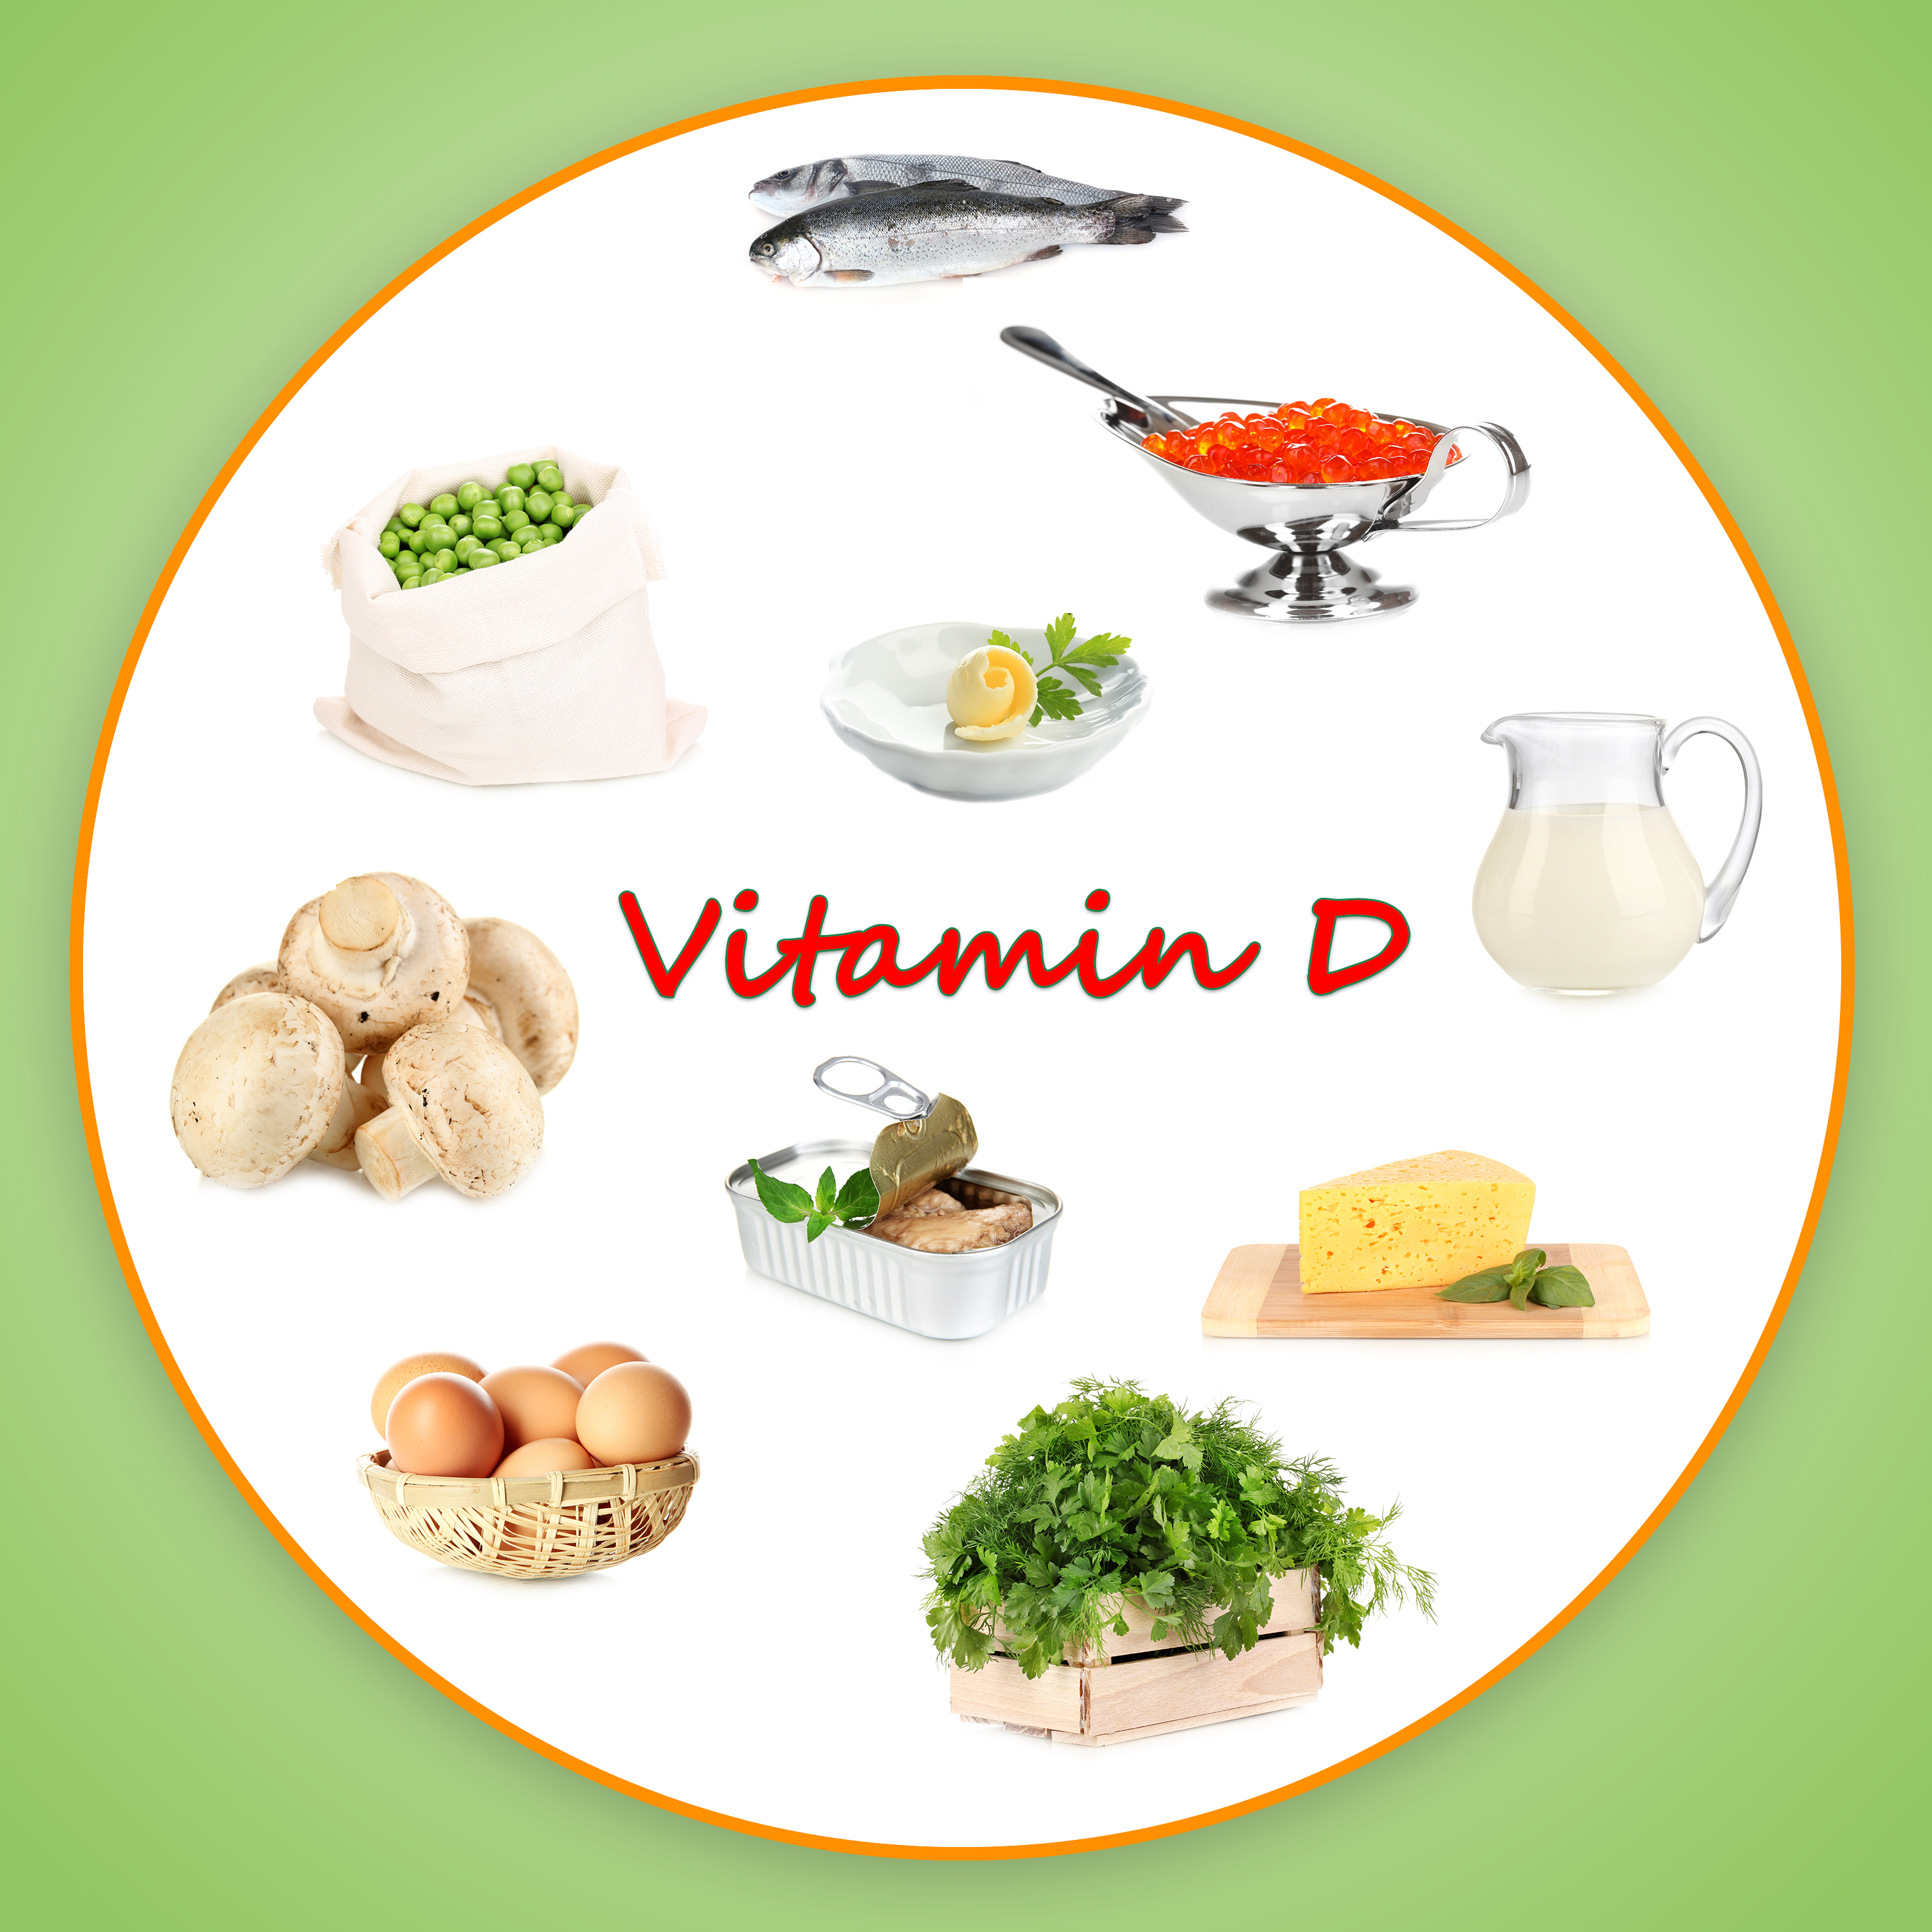 Фруктах есть витамин д. Продукты в которых витамин d. Витамин д в пище. Источники витамина д. Источники витамина д в продуктах.